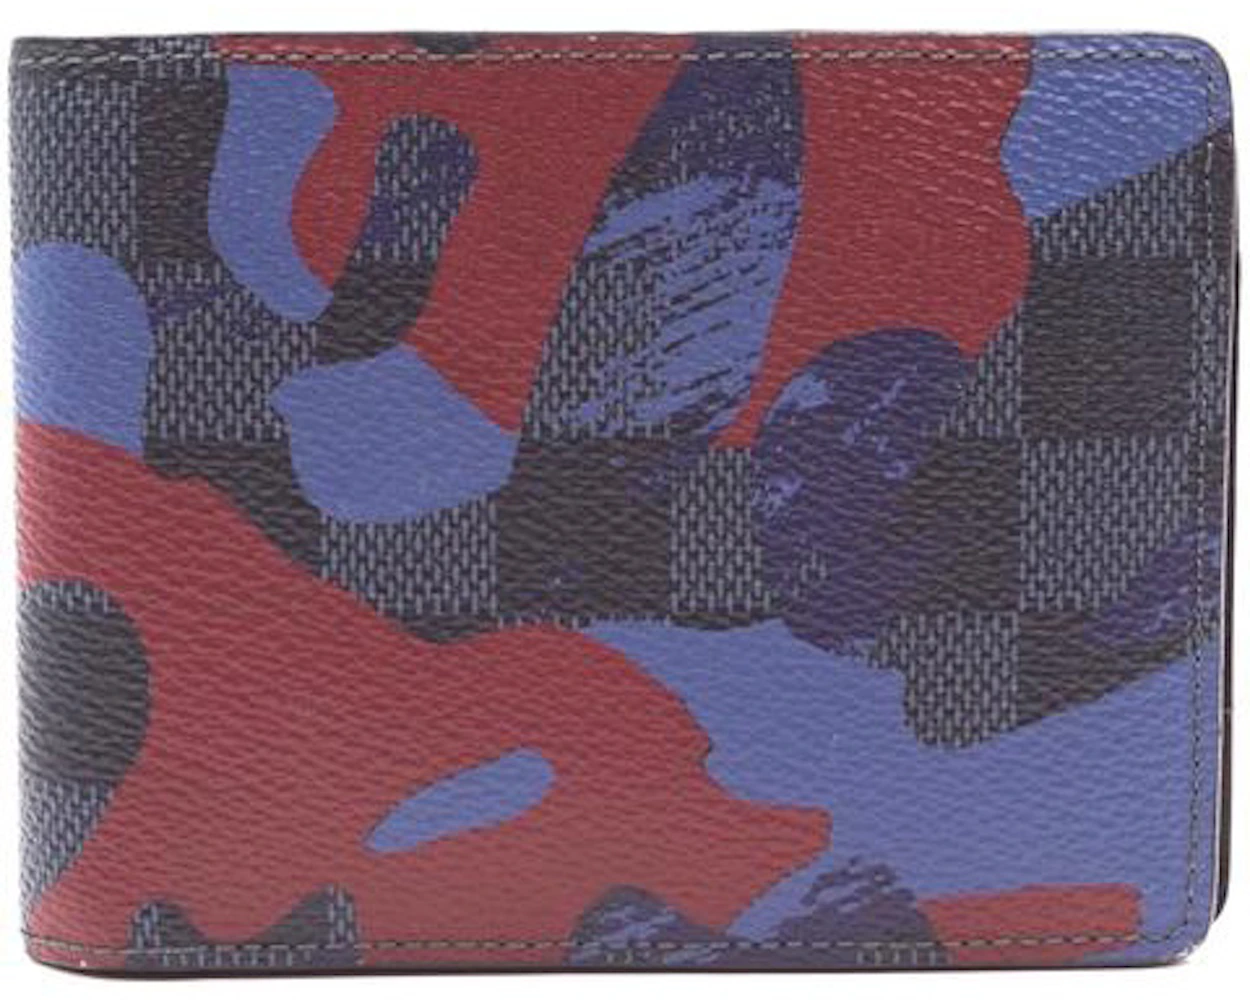 Louis Vuitton Multiple Wallet Damier Cobalt Camouflage Bordeaux